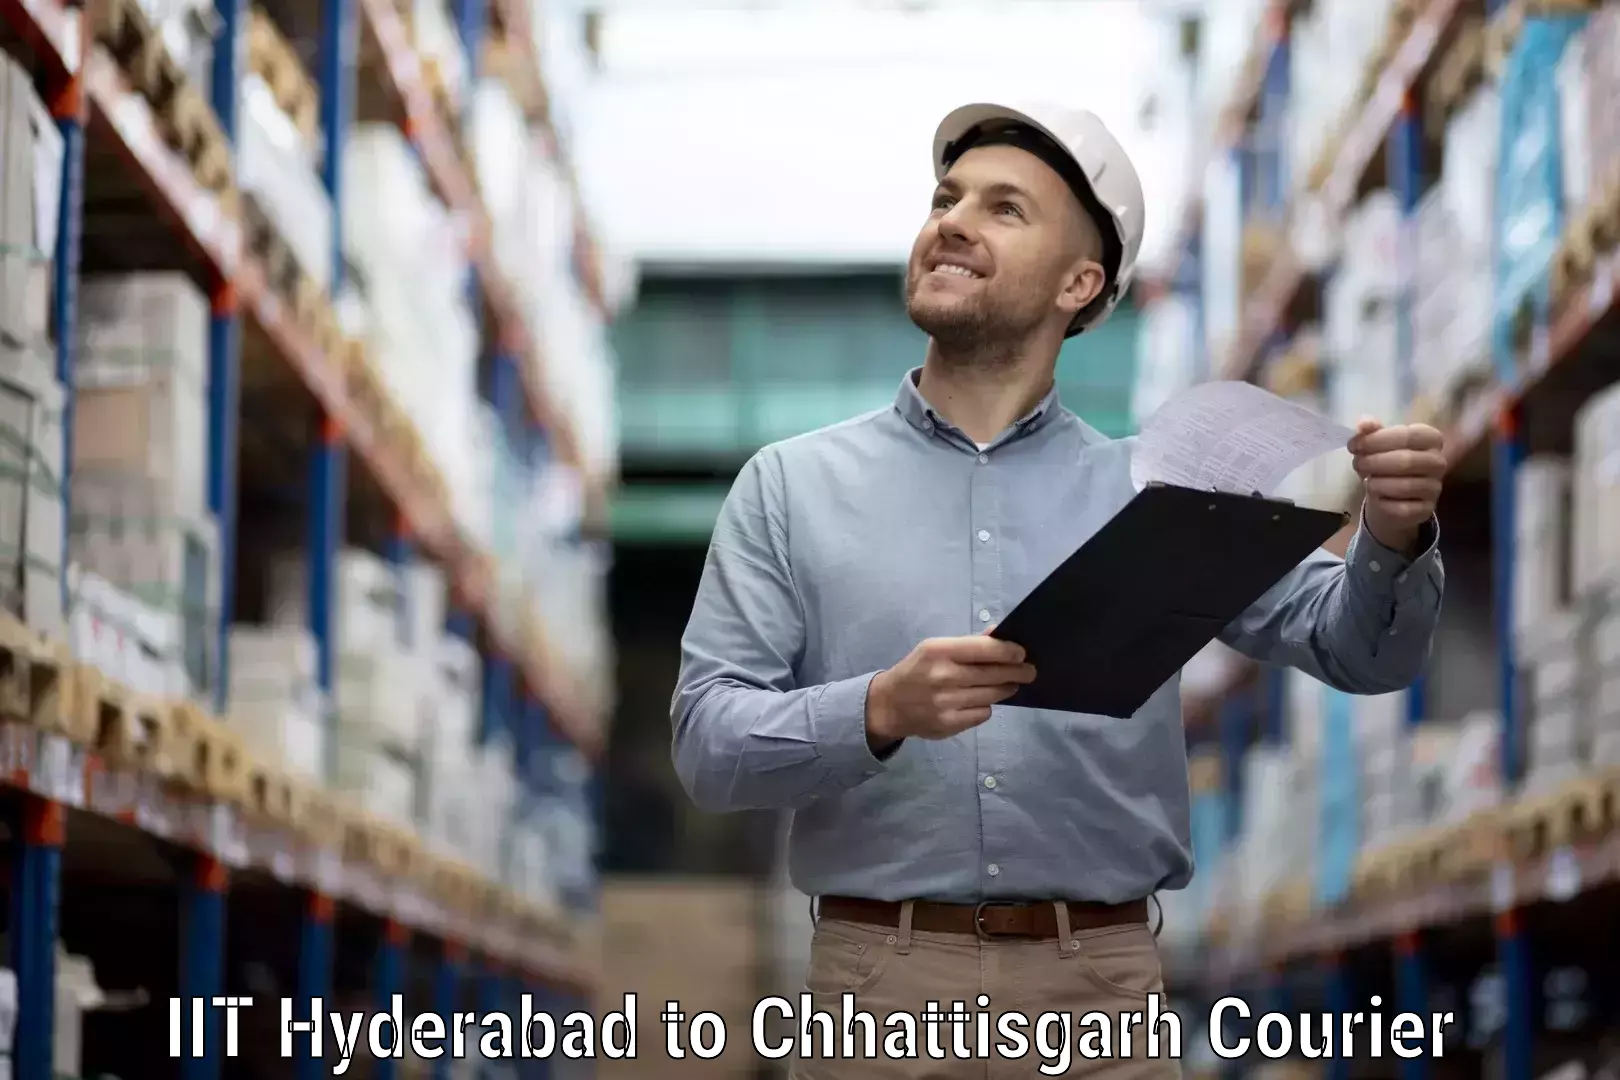 Supply chain delivery IIT Hyderabad to Bijapur Chhattisgarh